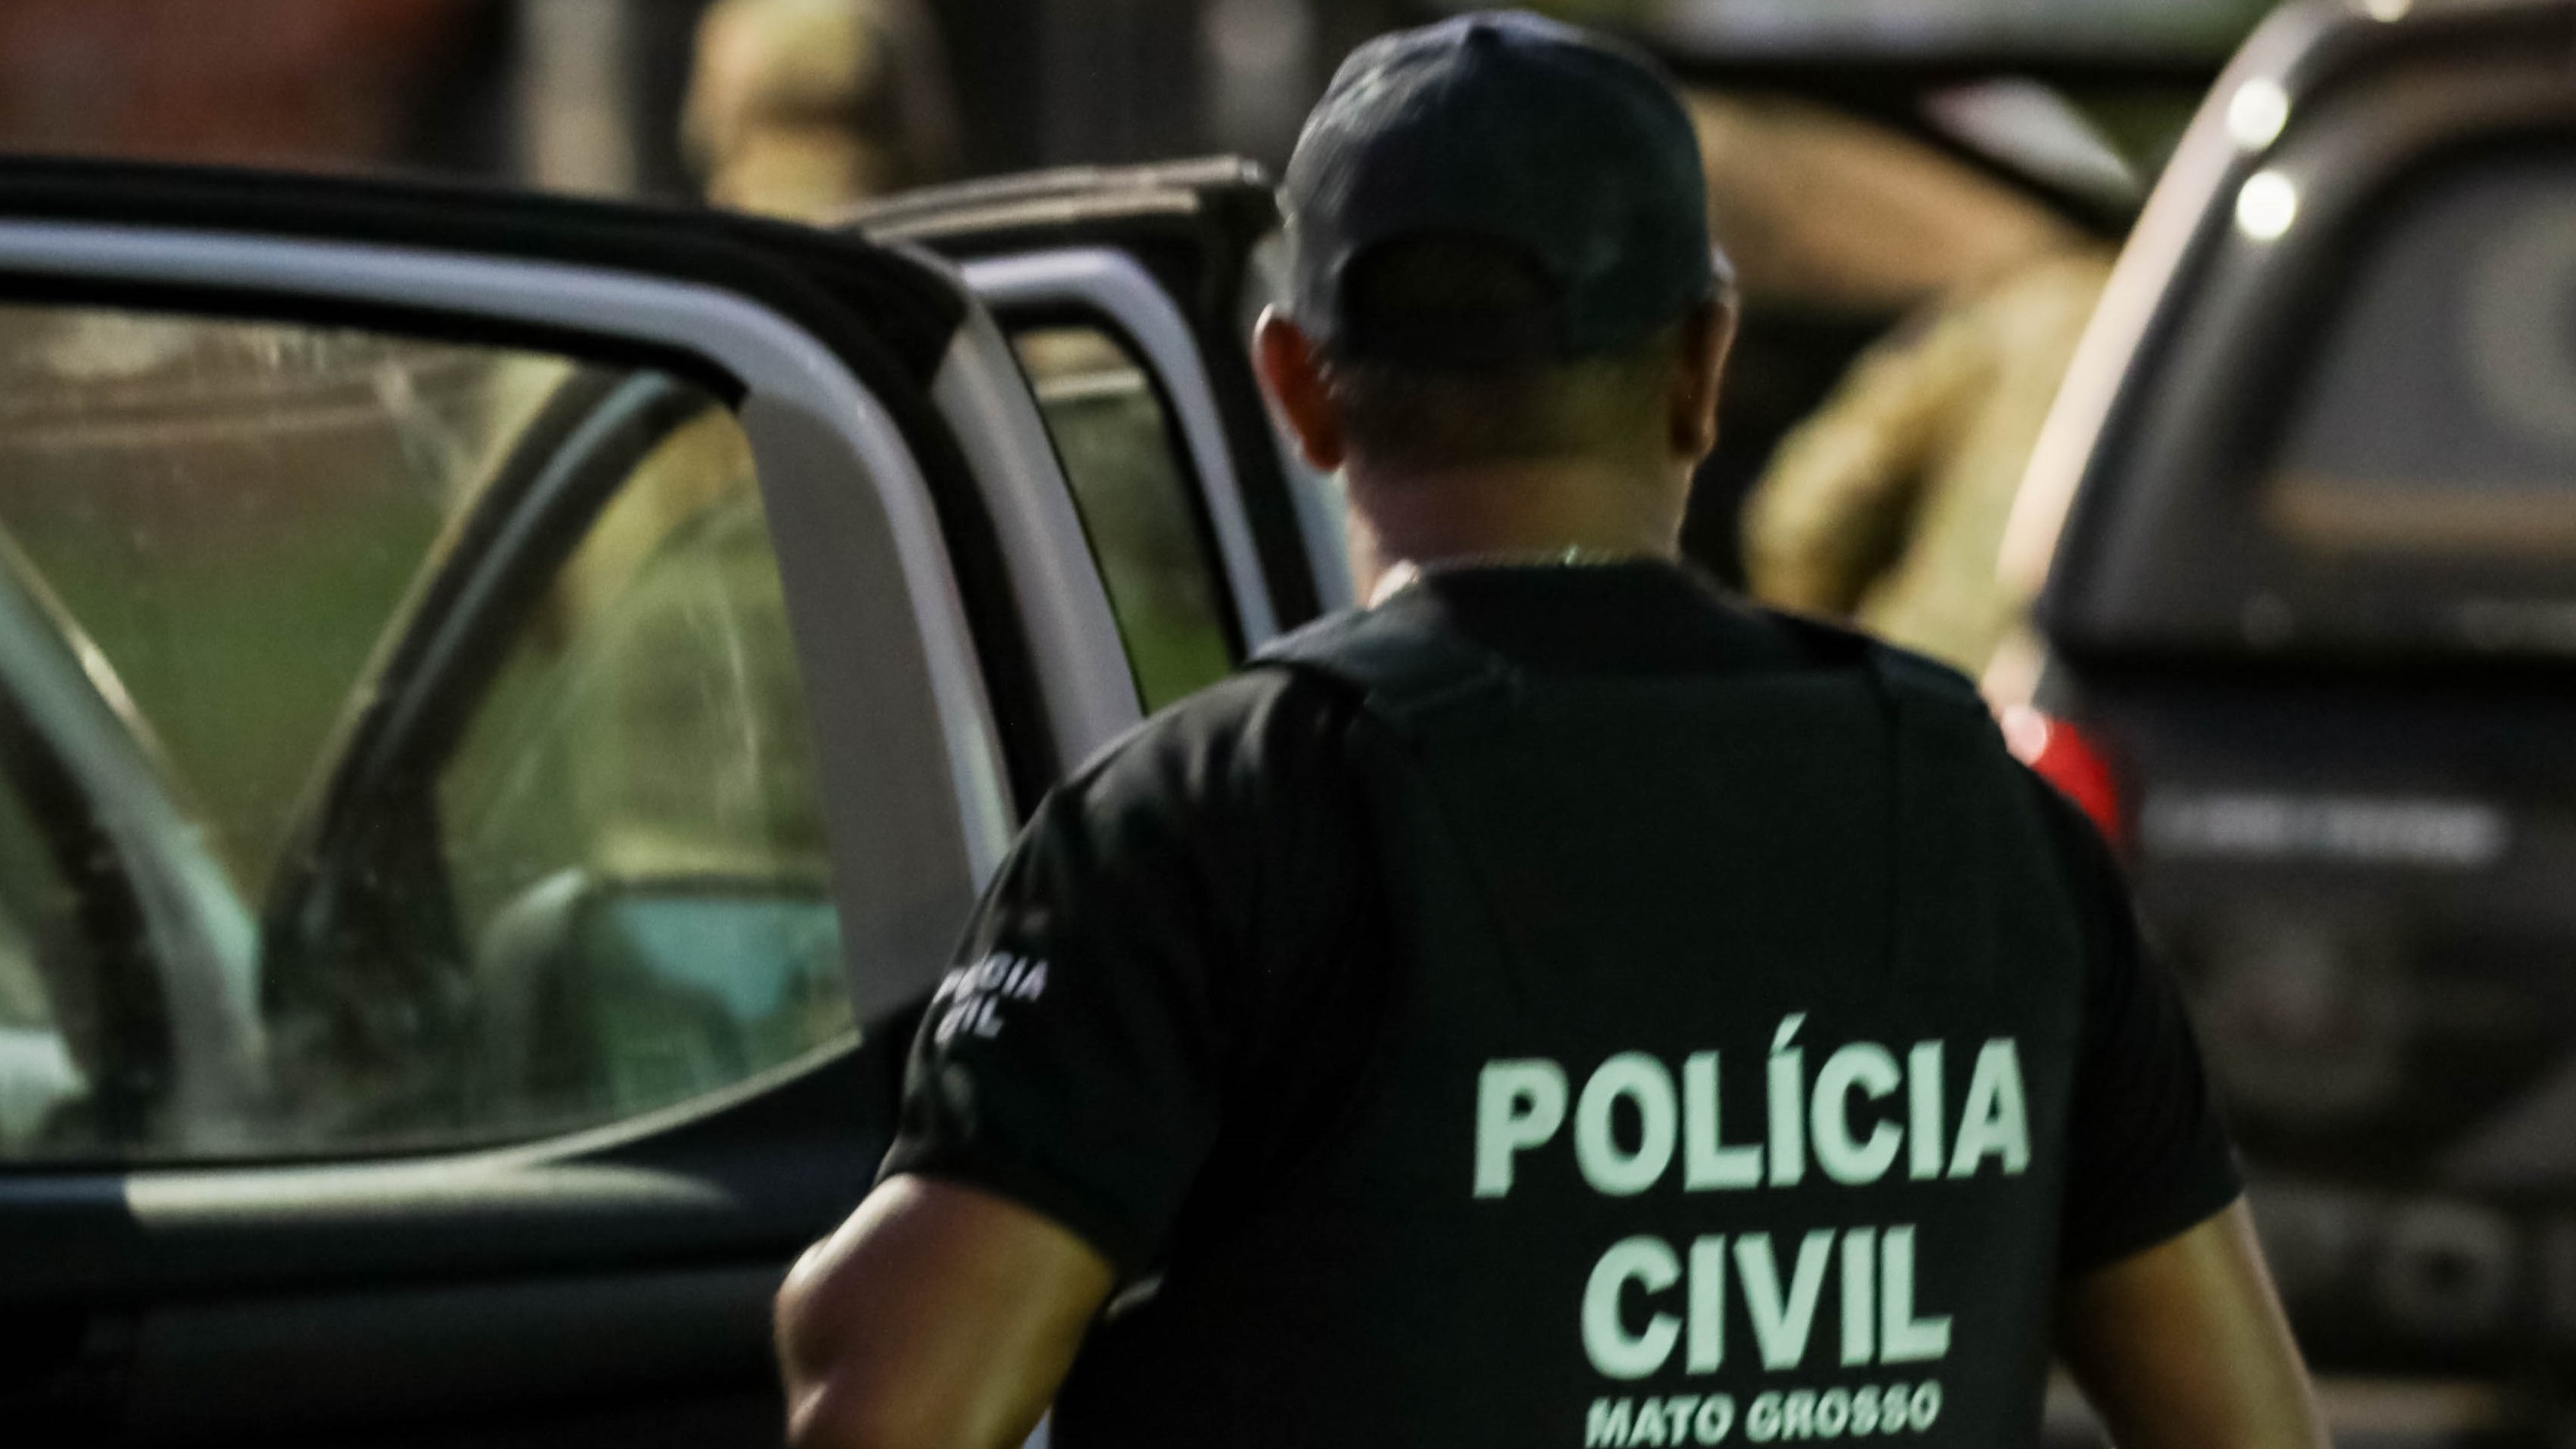 Polícia Civil prende em flagrante suspeito que confessa assassinatos de mãe e filhas em Sorriso